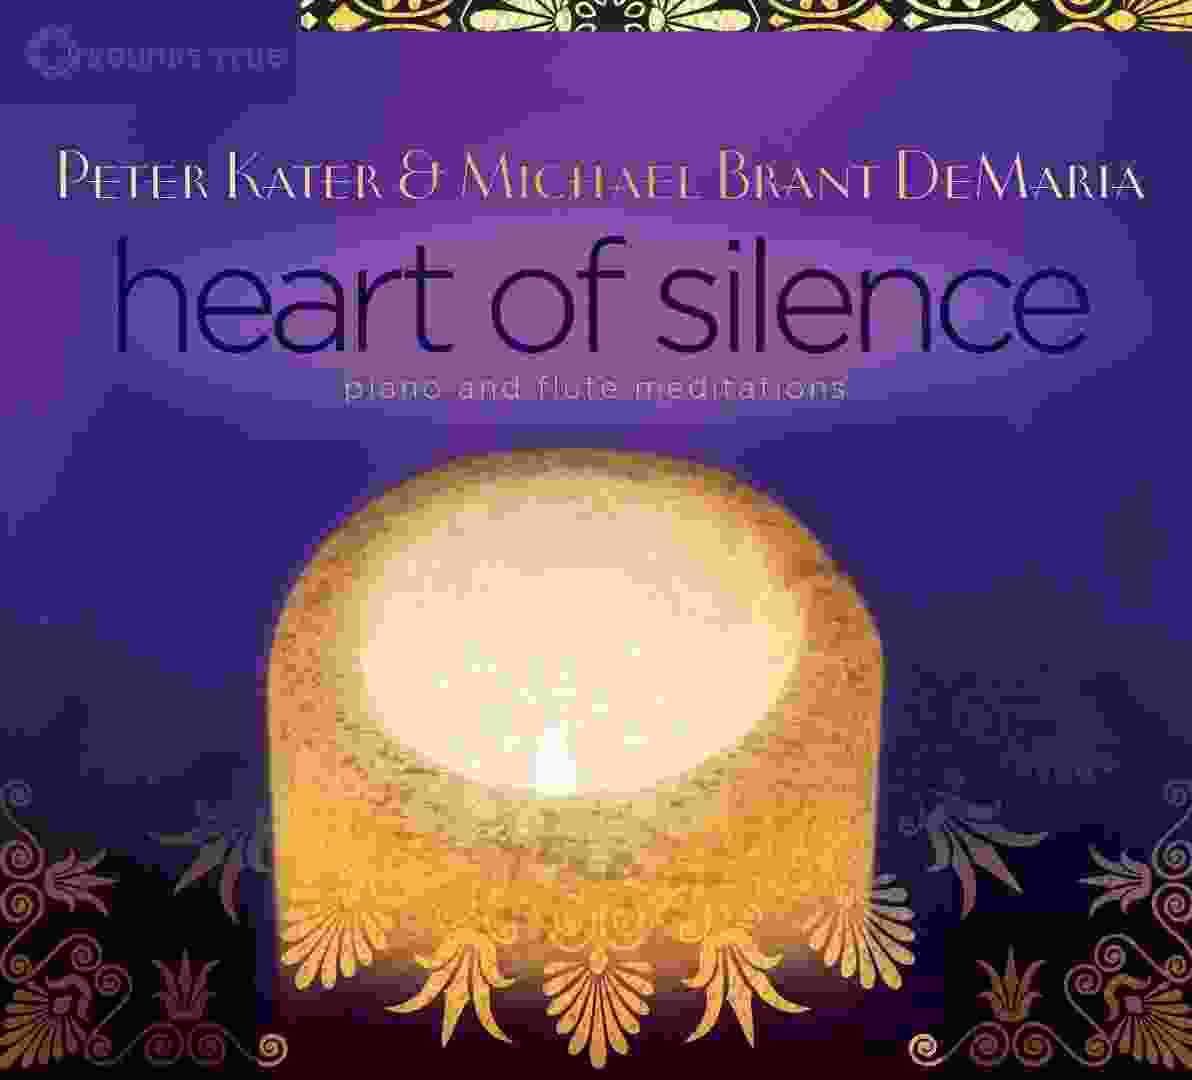 peter-kater-michael-brant-demaria-heart-of-silence-2015-chem-tishe-ty.jpg